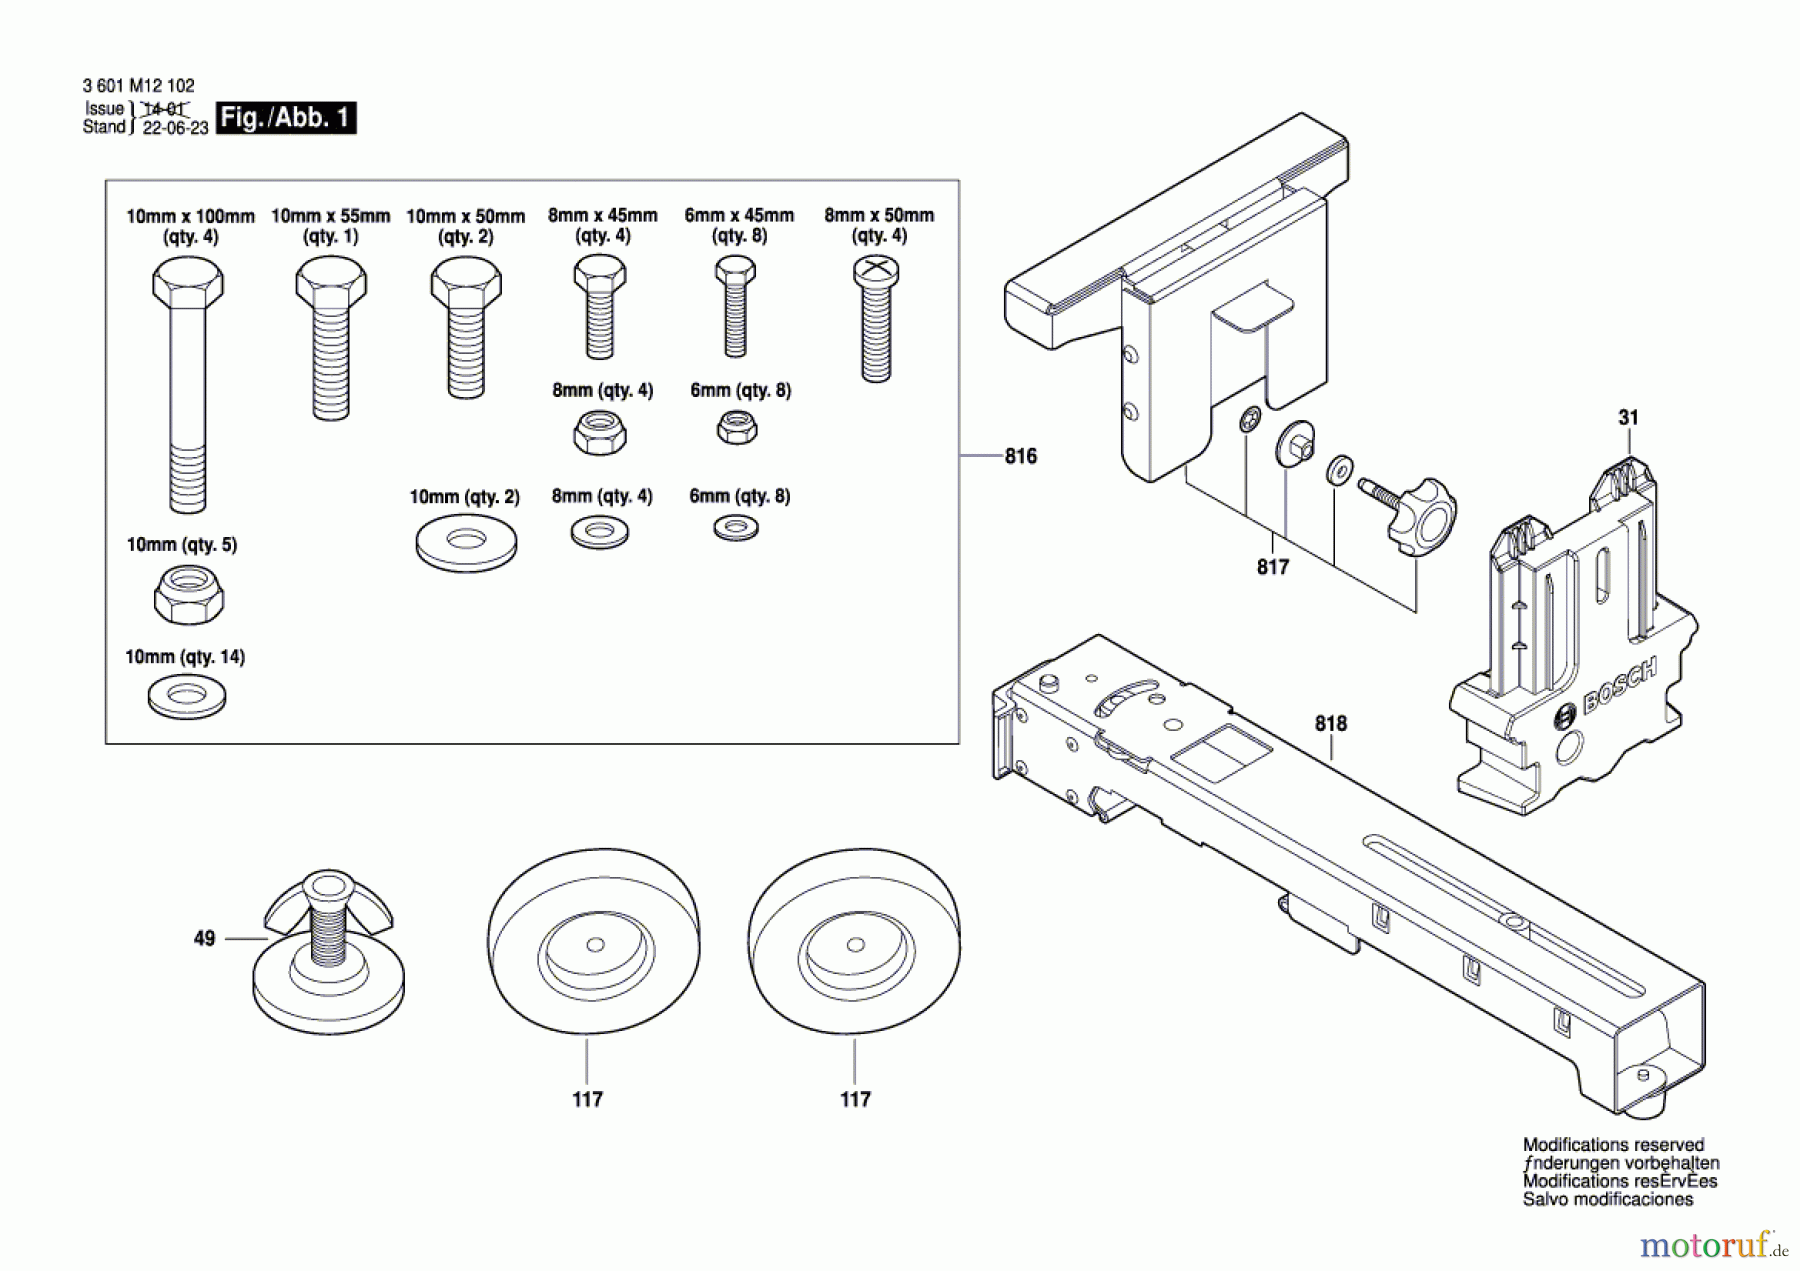  Bosch Werkzeug Arbeitstisch GTA 2500 W Seite 1